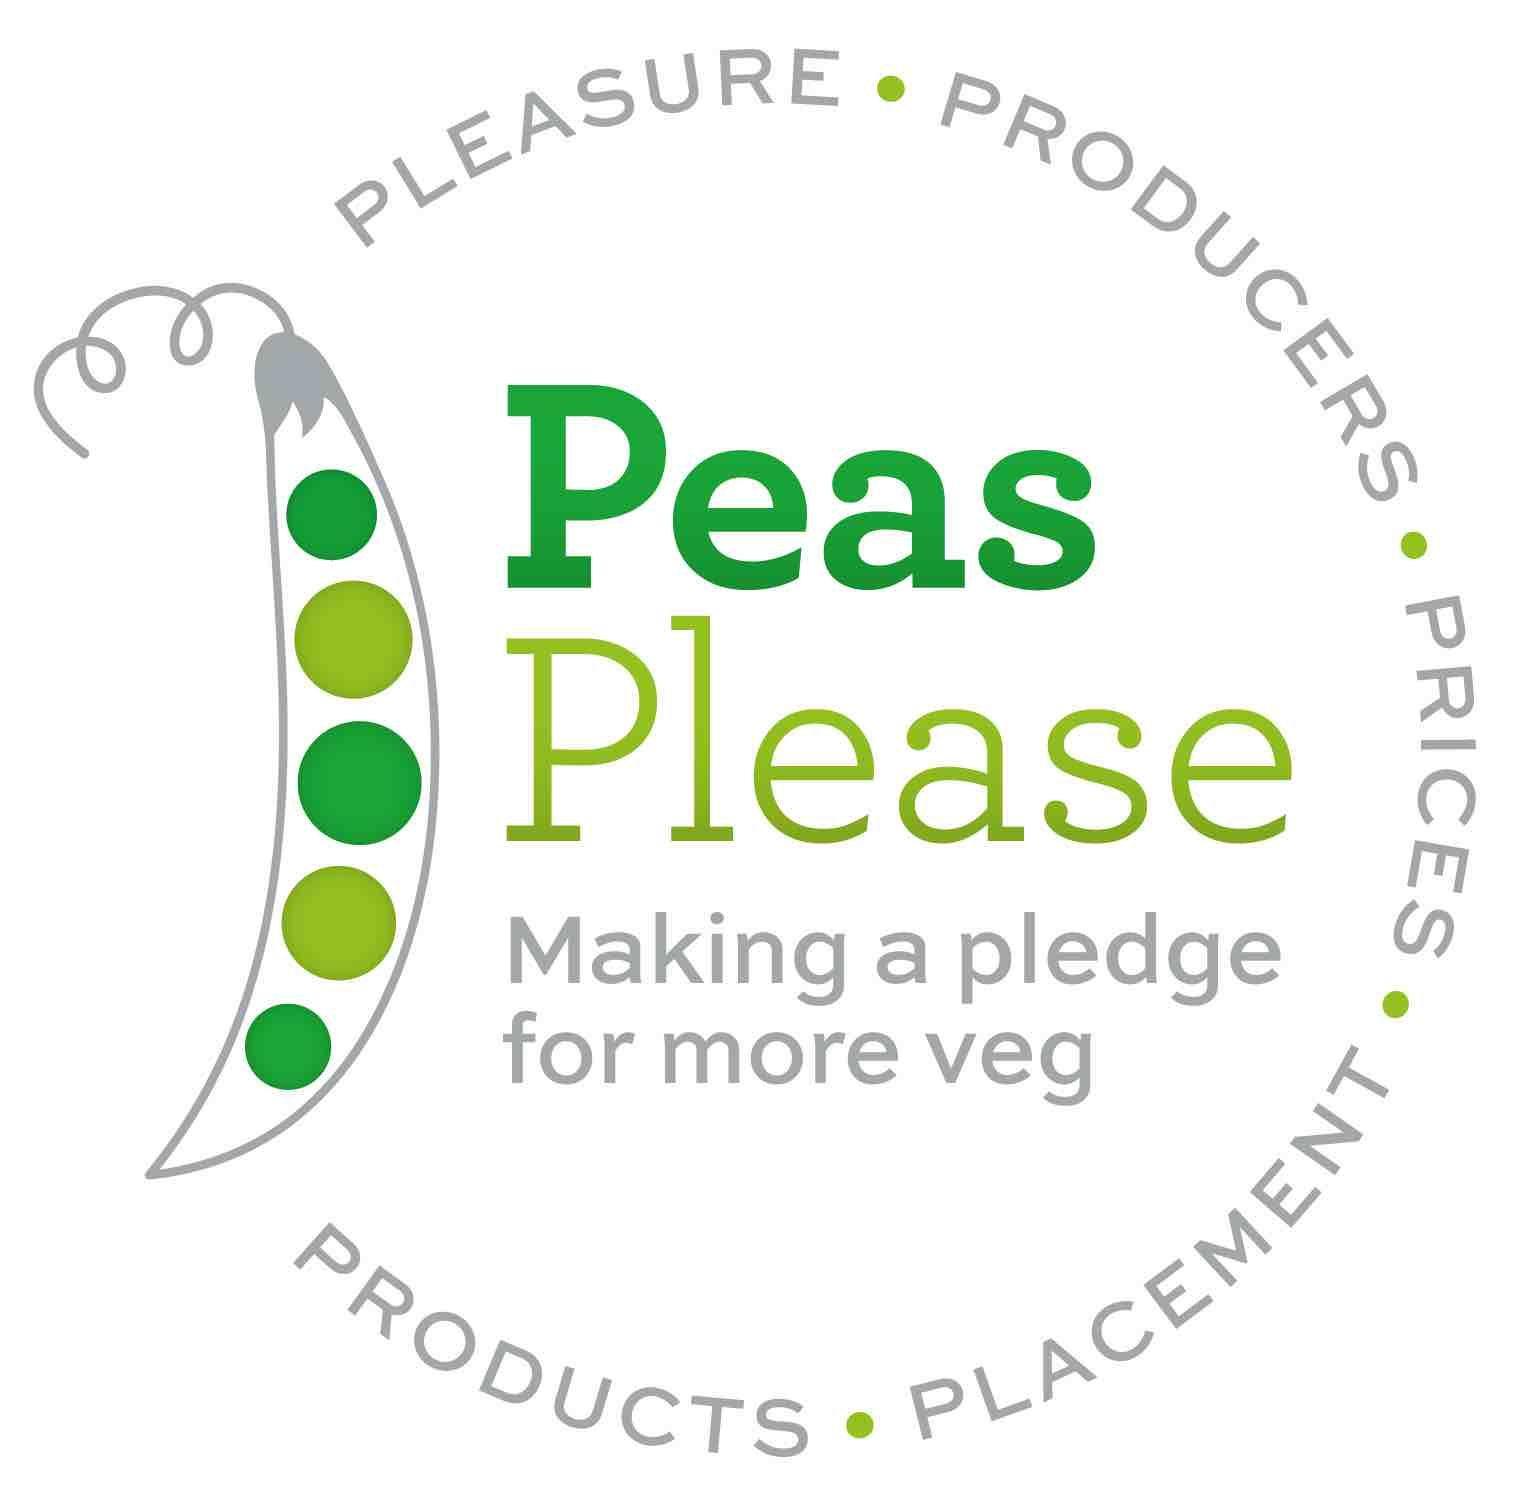 Peas Logo - Peas Please logo - Nourish Scotland